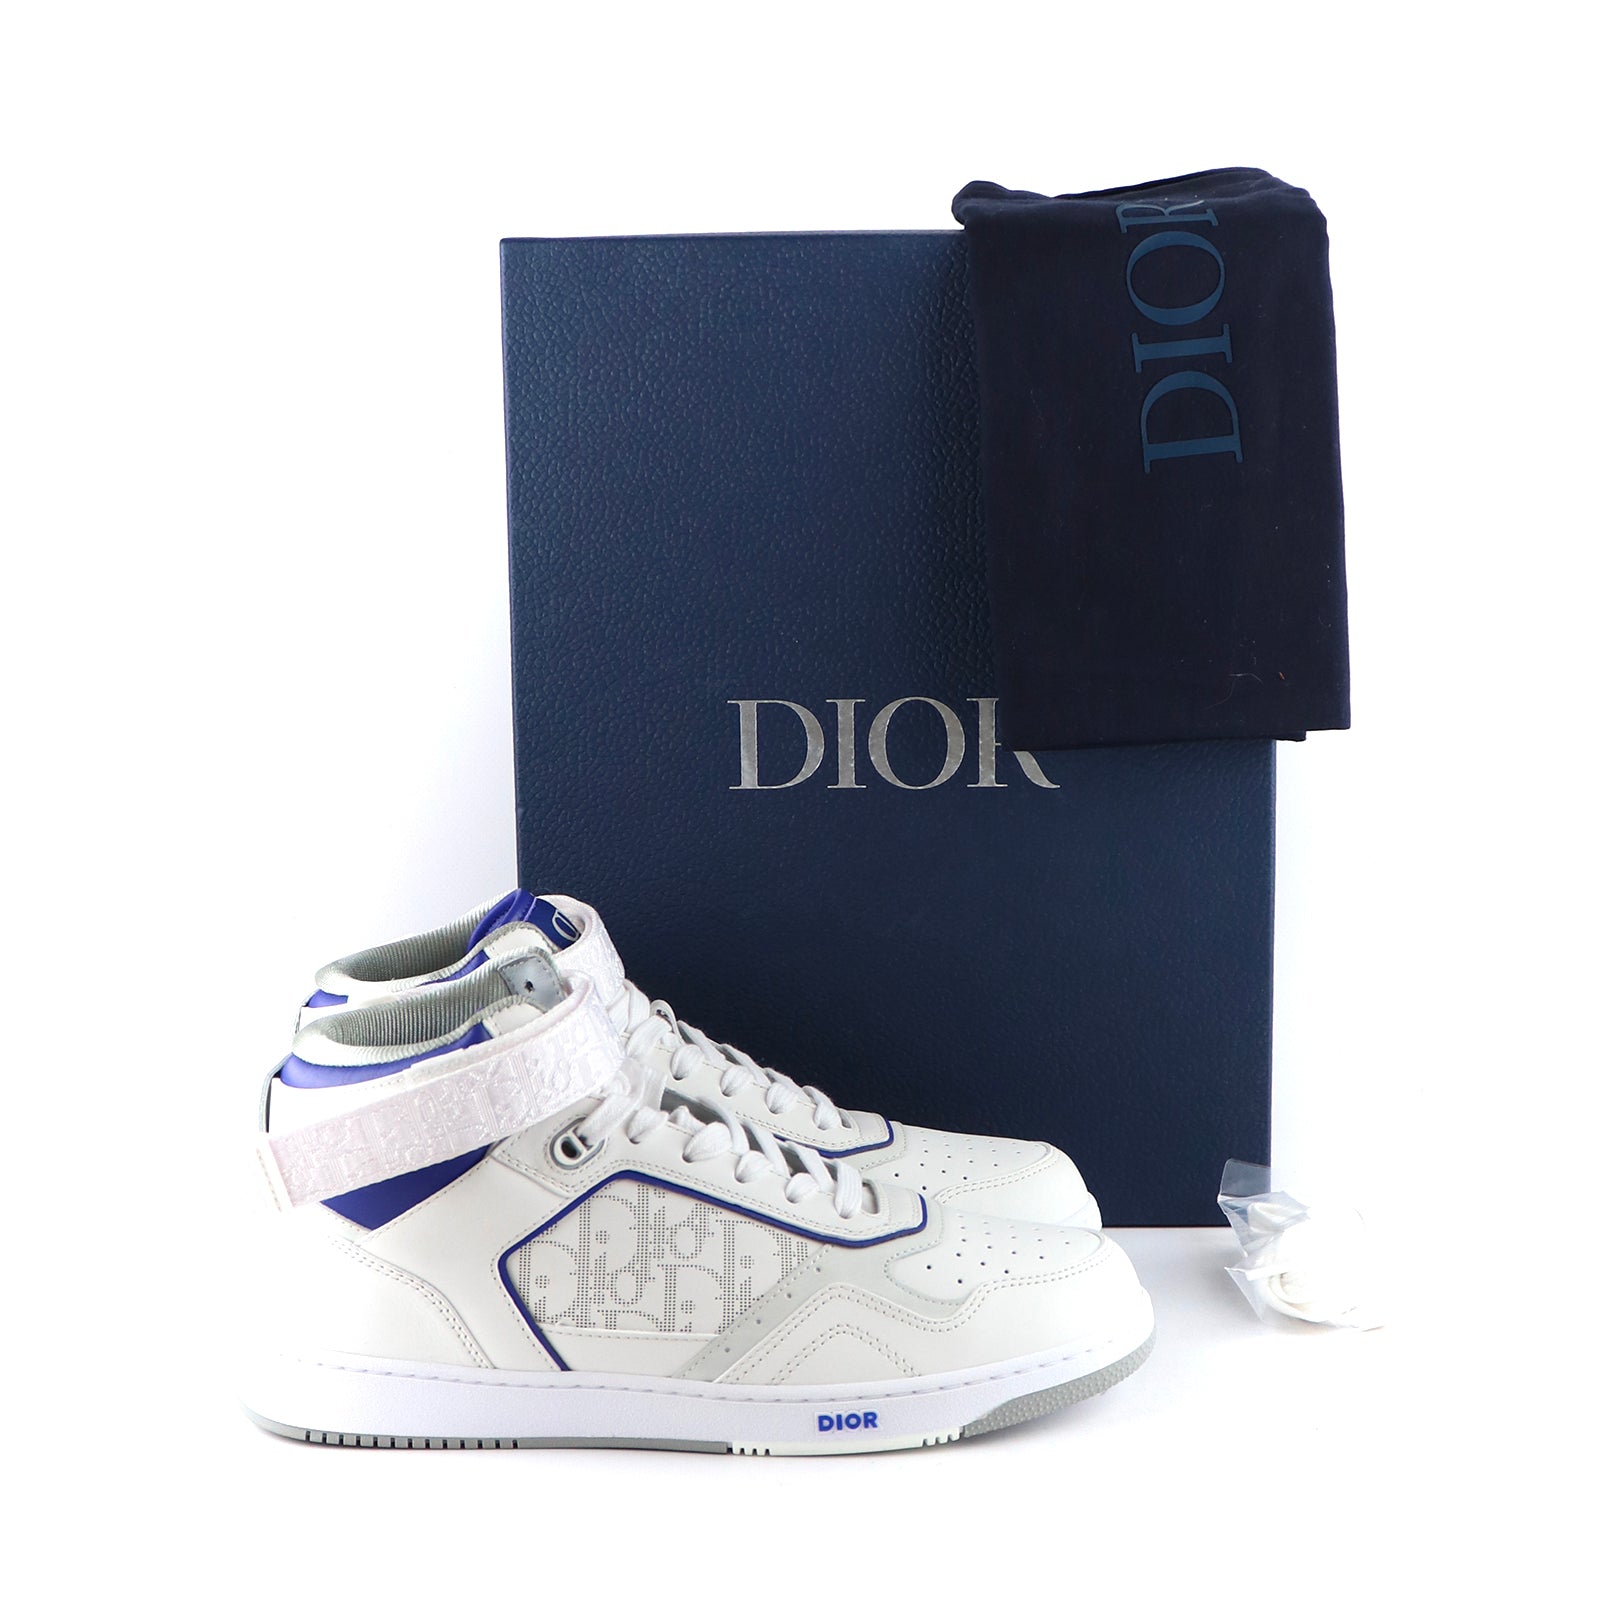 DIOR - Sneakers B27 High en cuir blanc et bleu marine (T43)